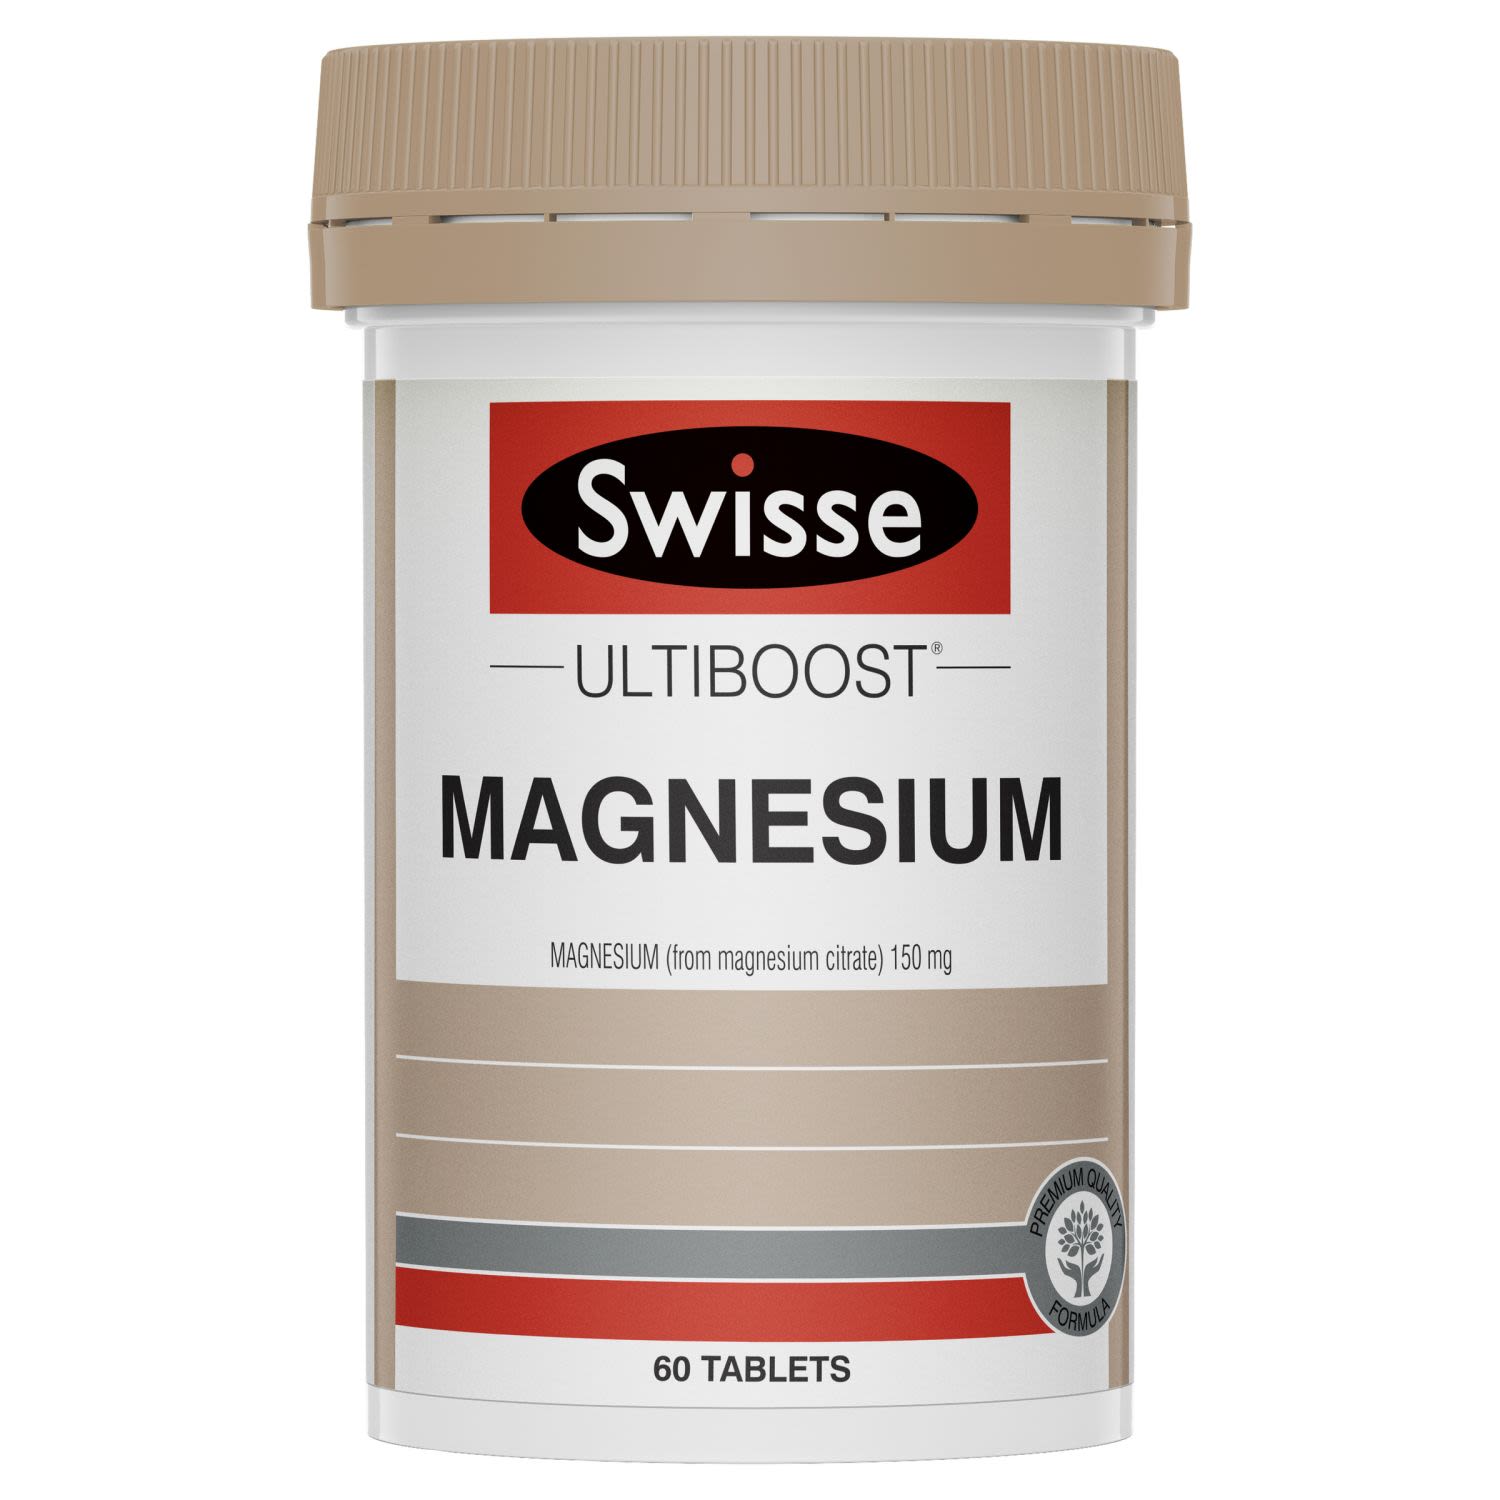 Swisse Ultiboost Magnesium, 60 Each